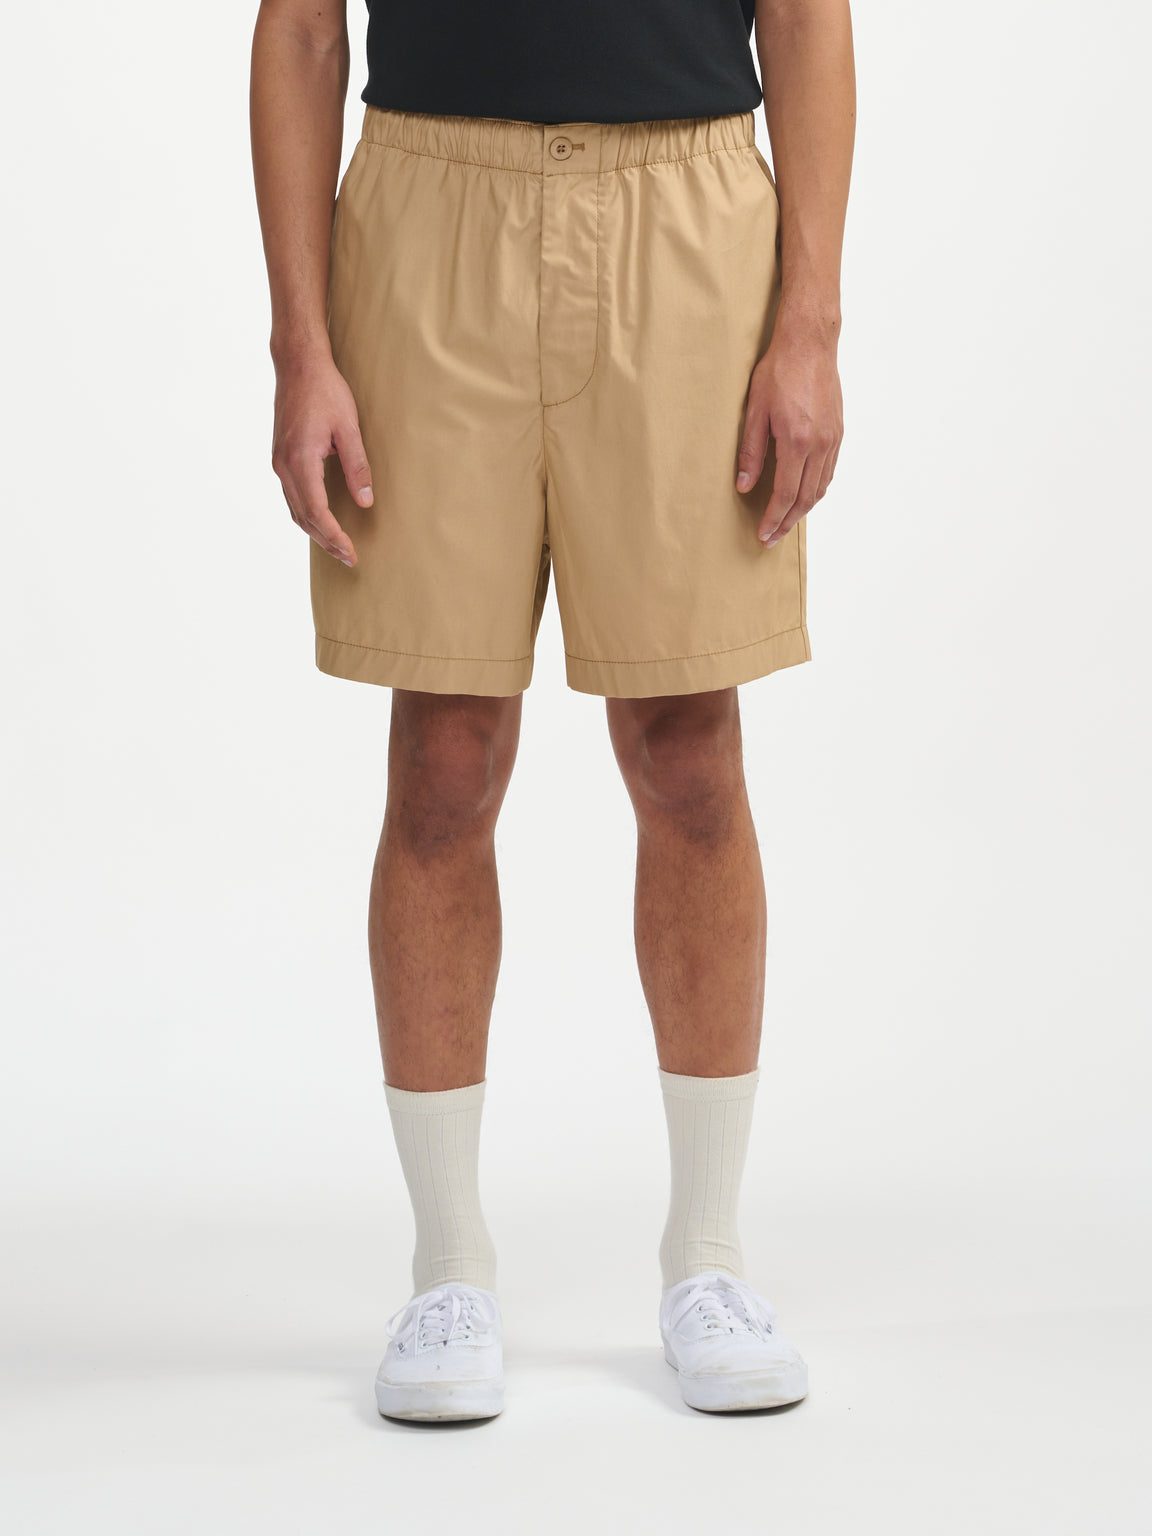 Jug Shorts - Beige | Men Collection | Bellerose